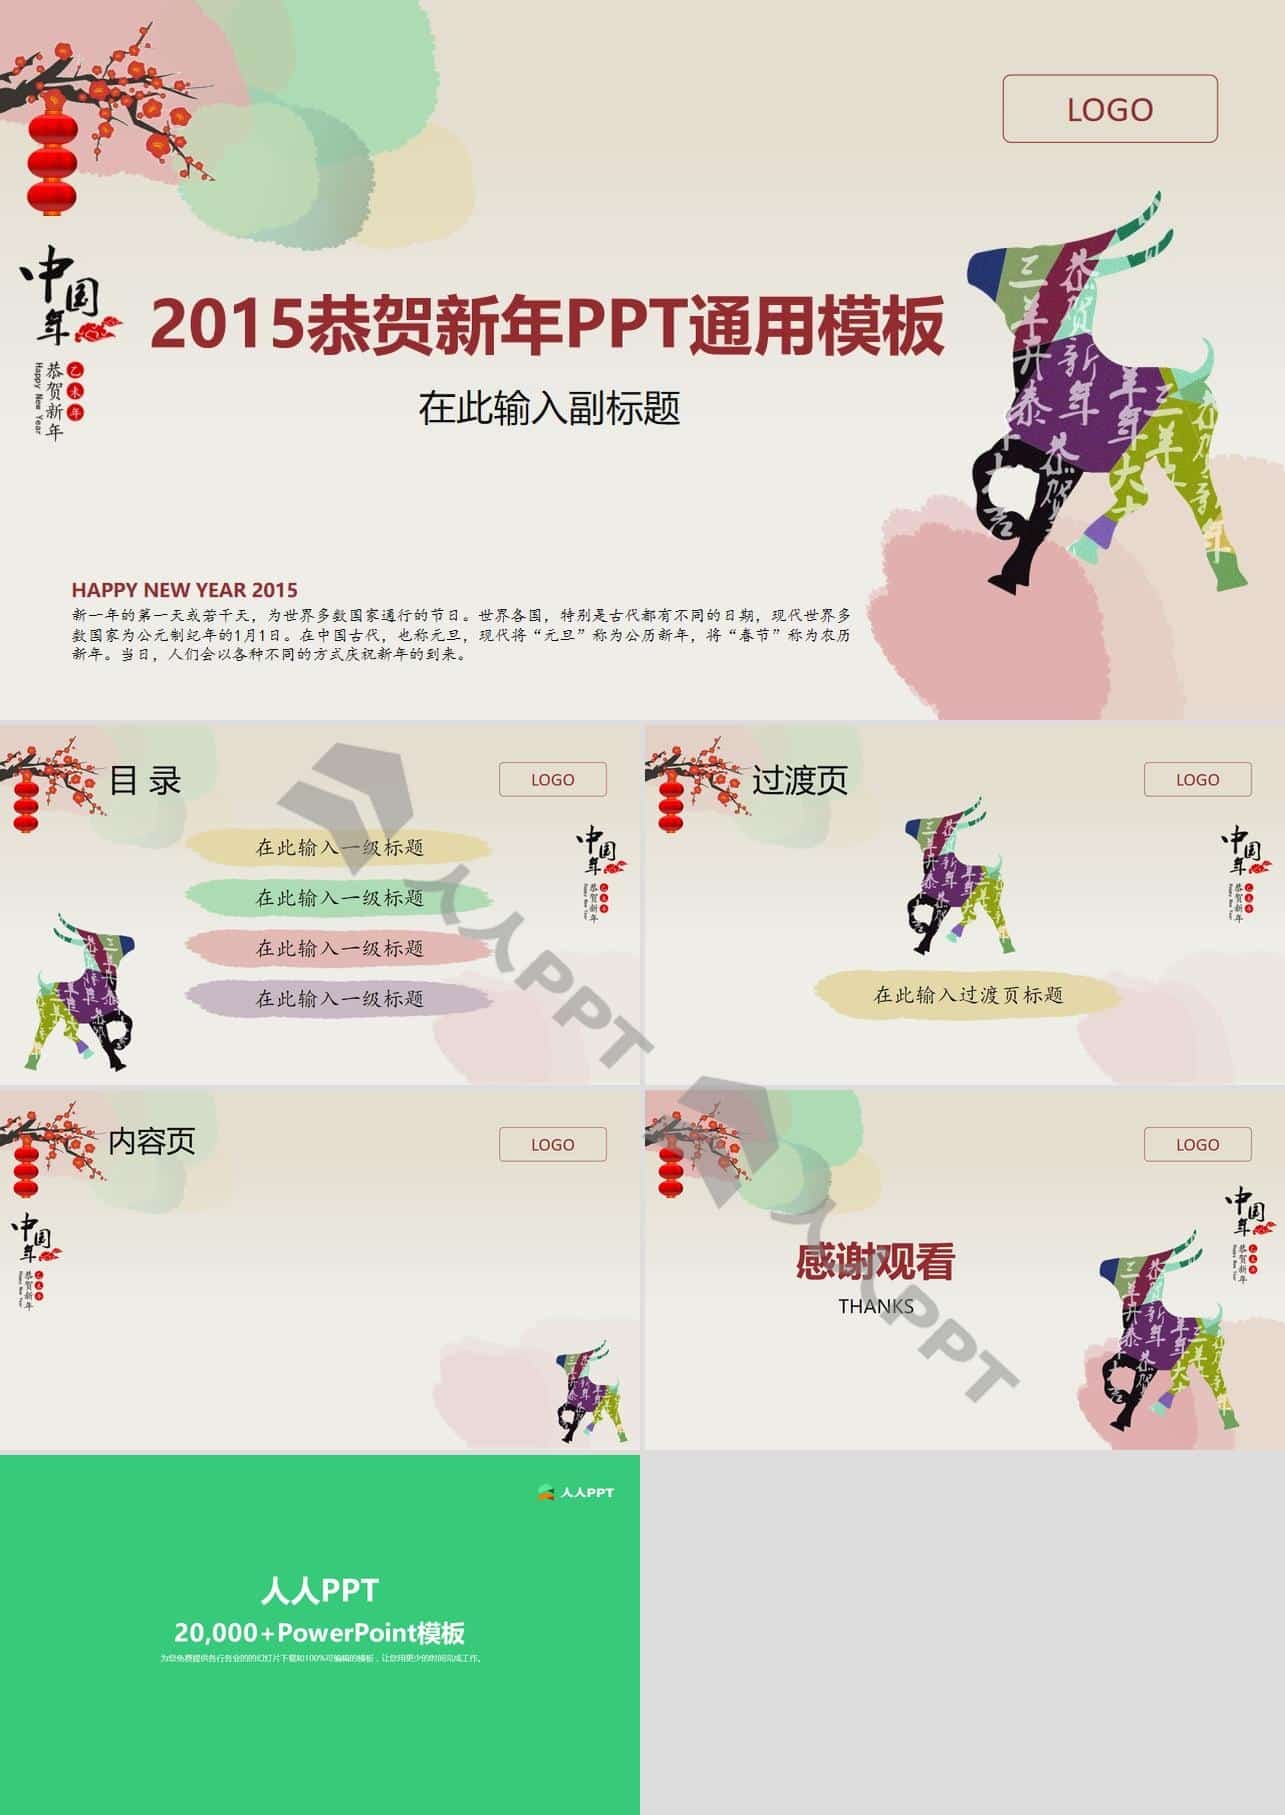 中国羊年――2015恭贺新年静态大气PPT模板长图